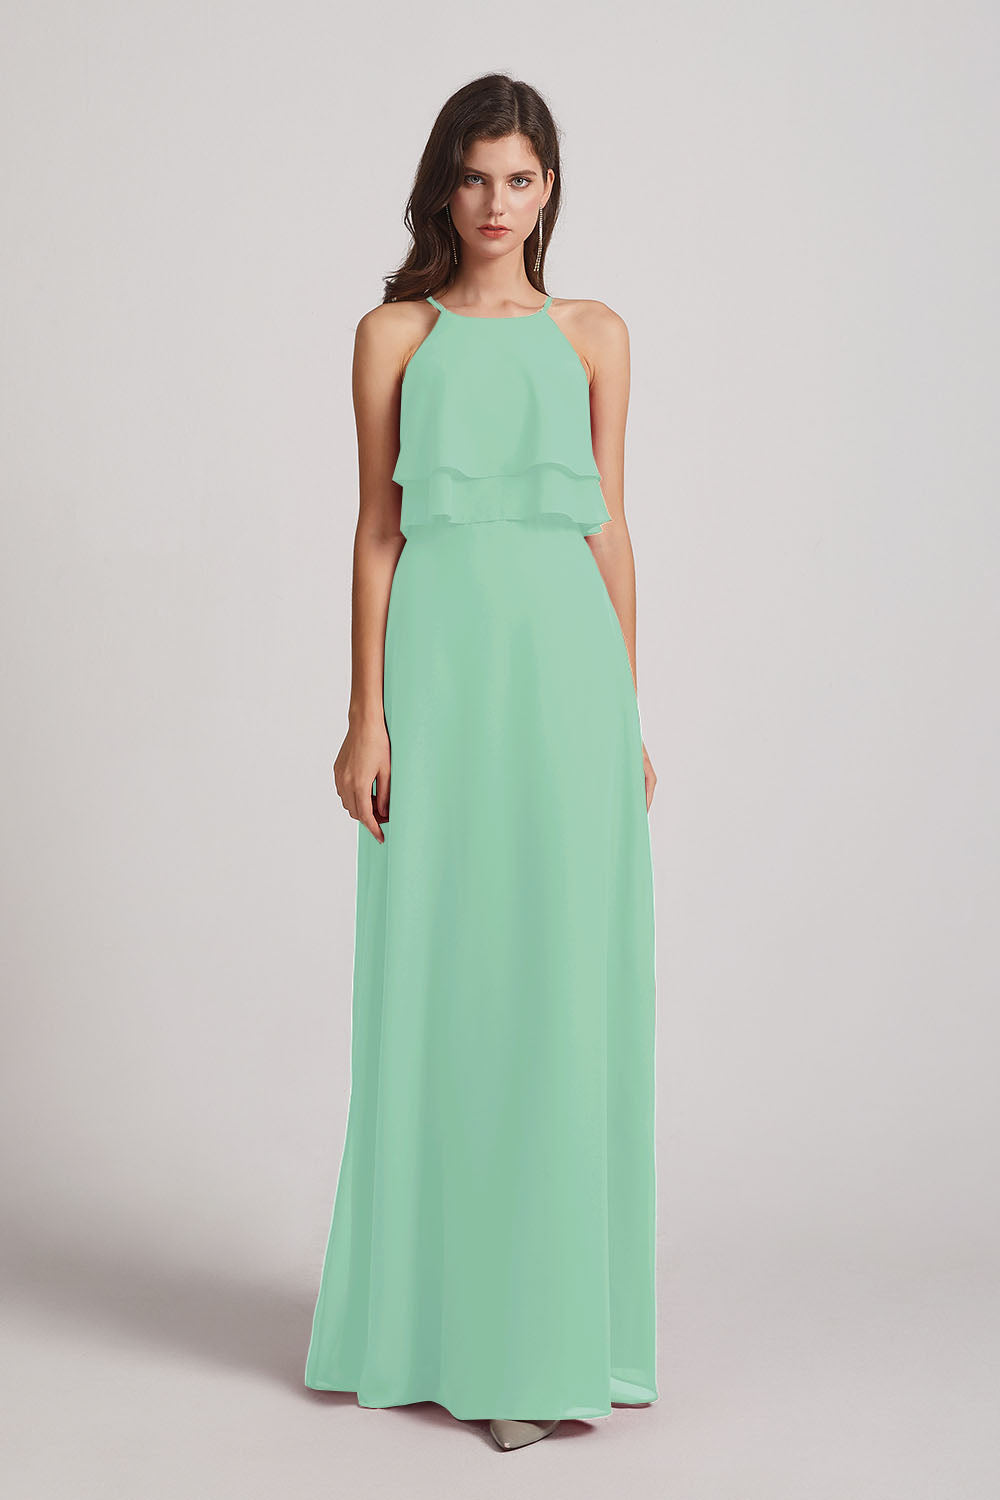 Alfa Bridal Mint Green A-line Chiffon Jewel Flounced Top Bridesmaid Dresses (AF0057)